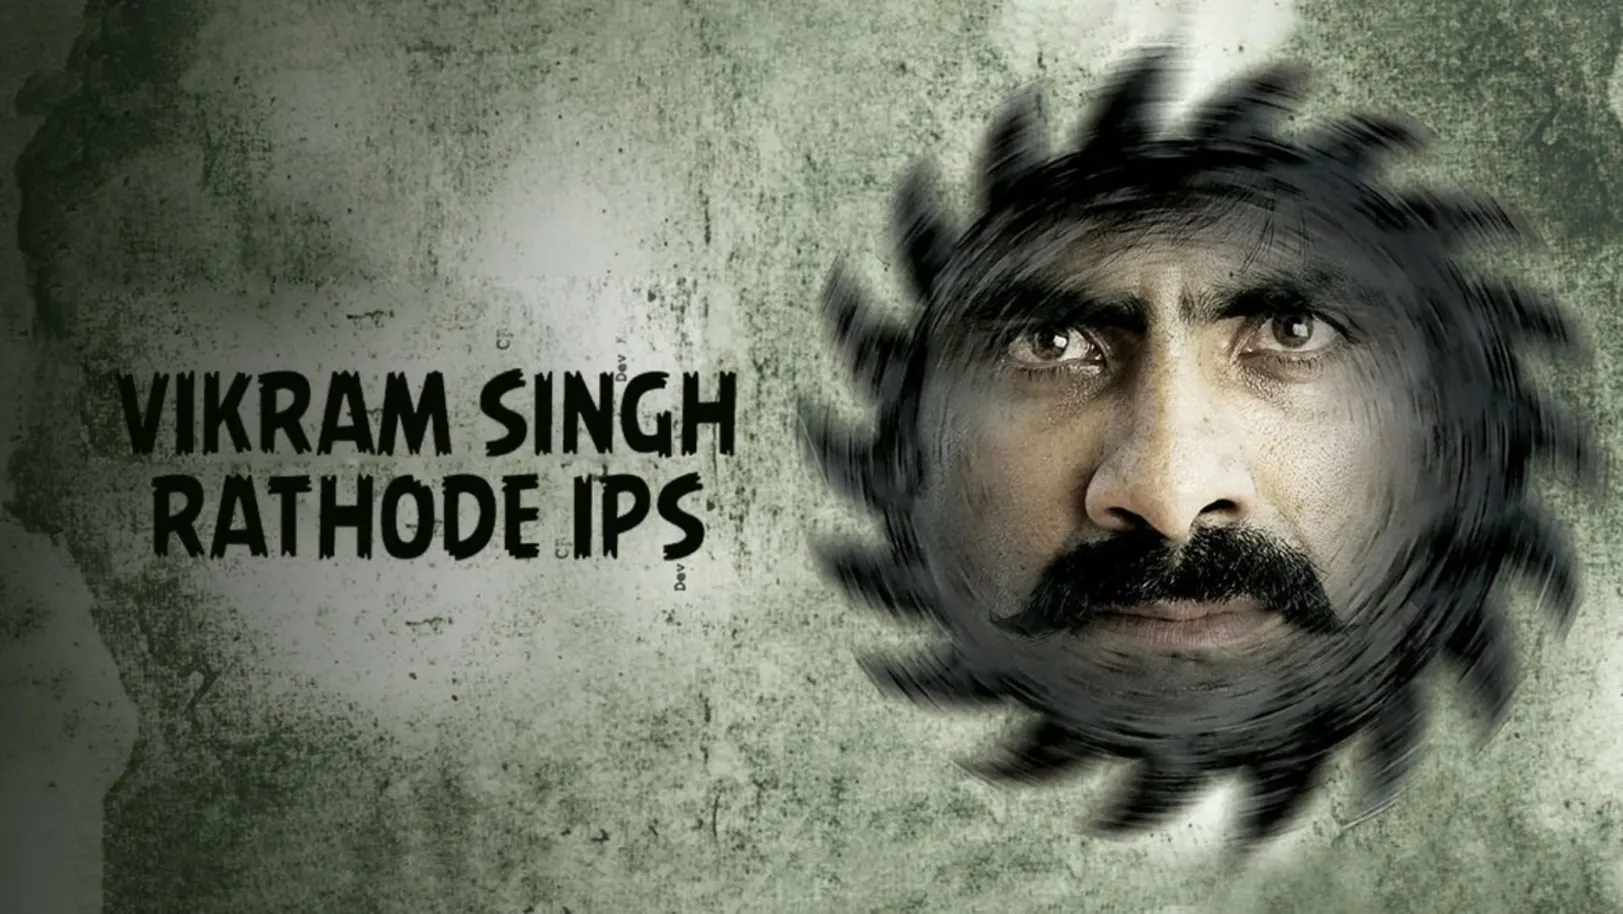 Vikram Singh Rathode IPS Movie